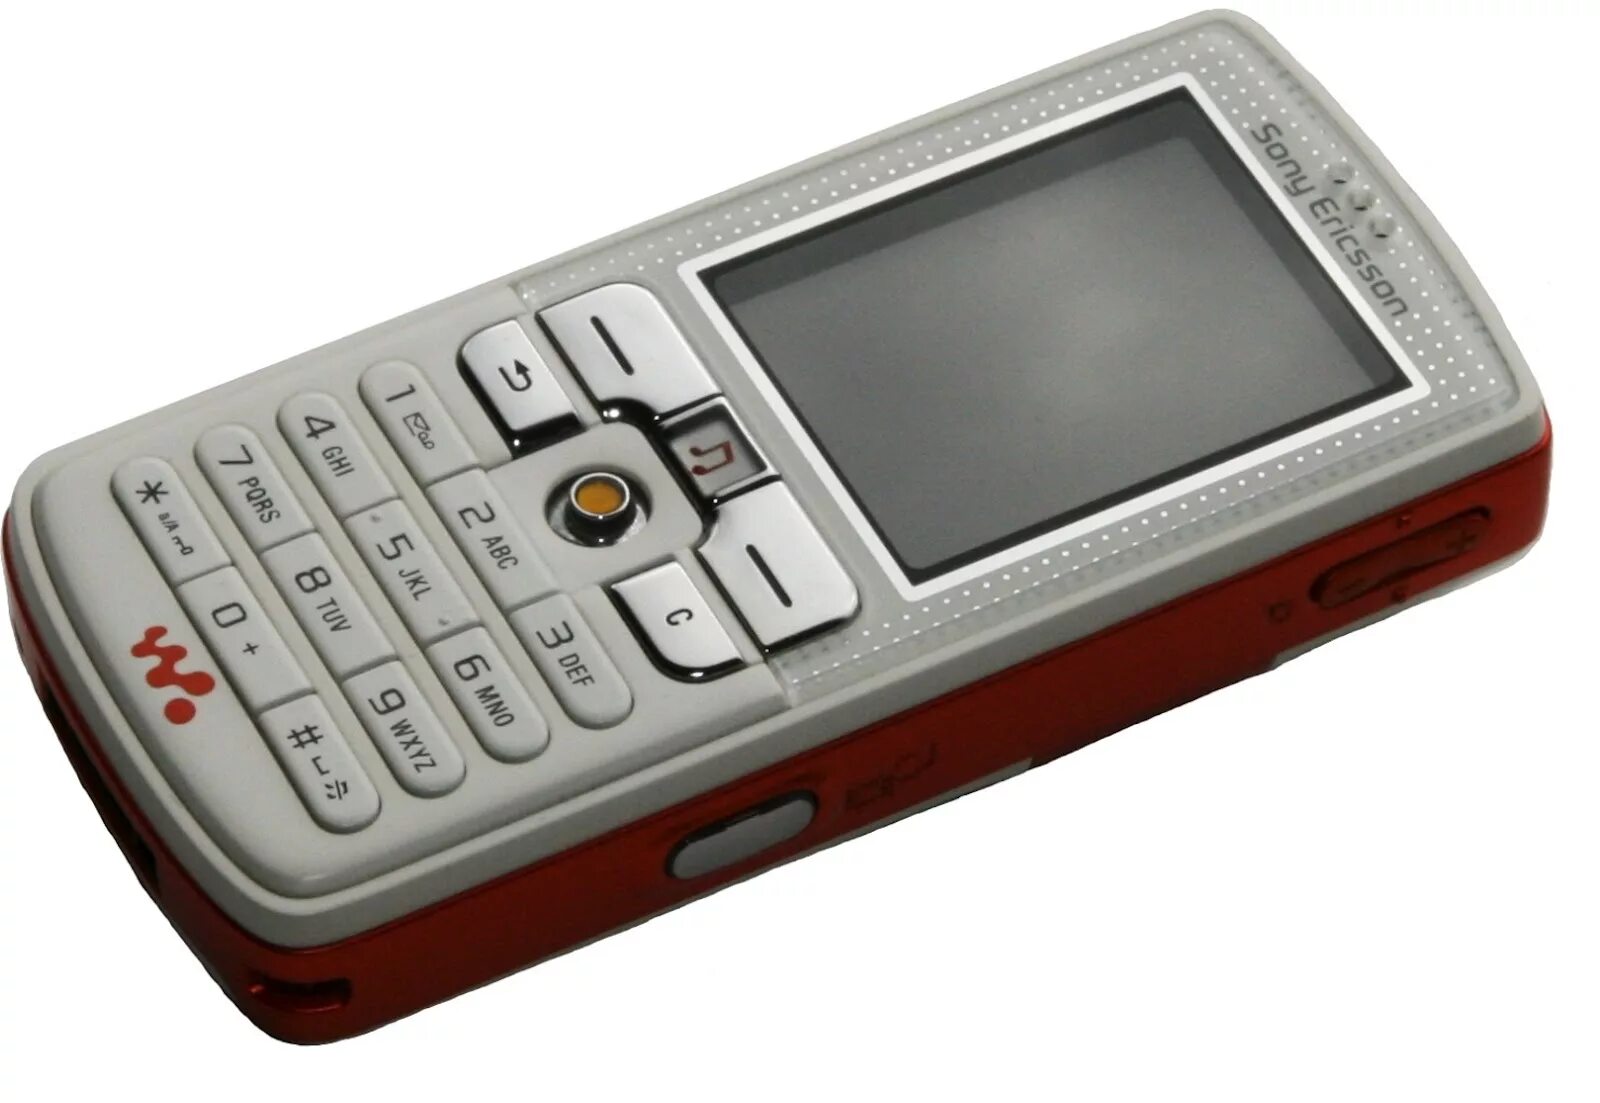 Sony Ericsson w800. Sony Ericsson k720i. Sony Ericsson k690i. Sony Ericsson w500.